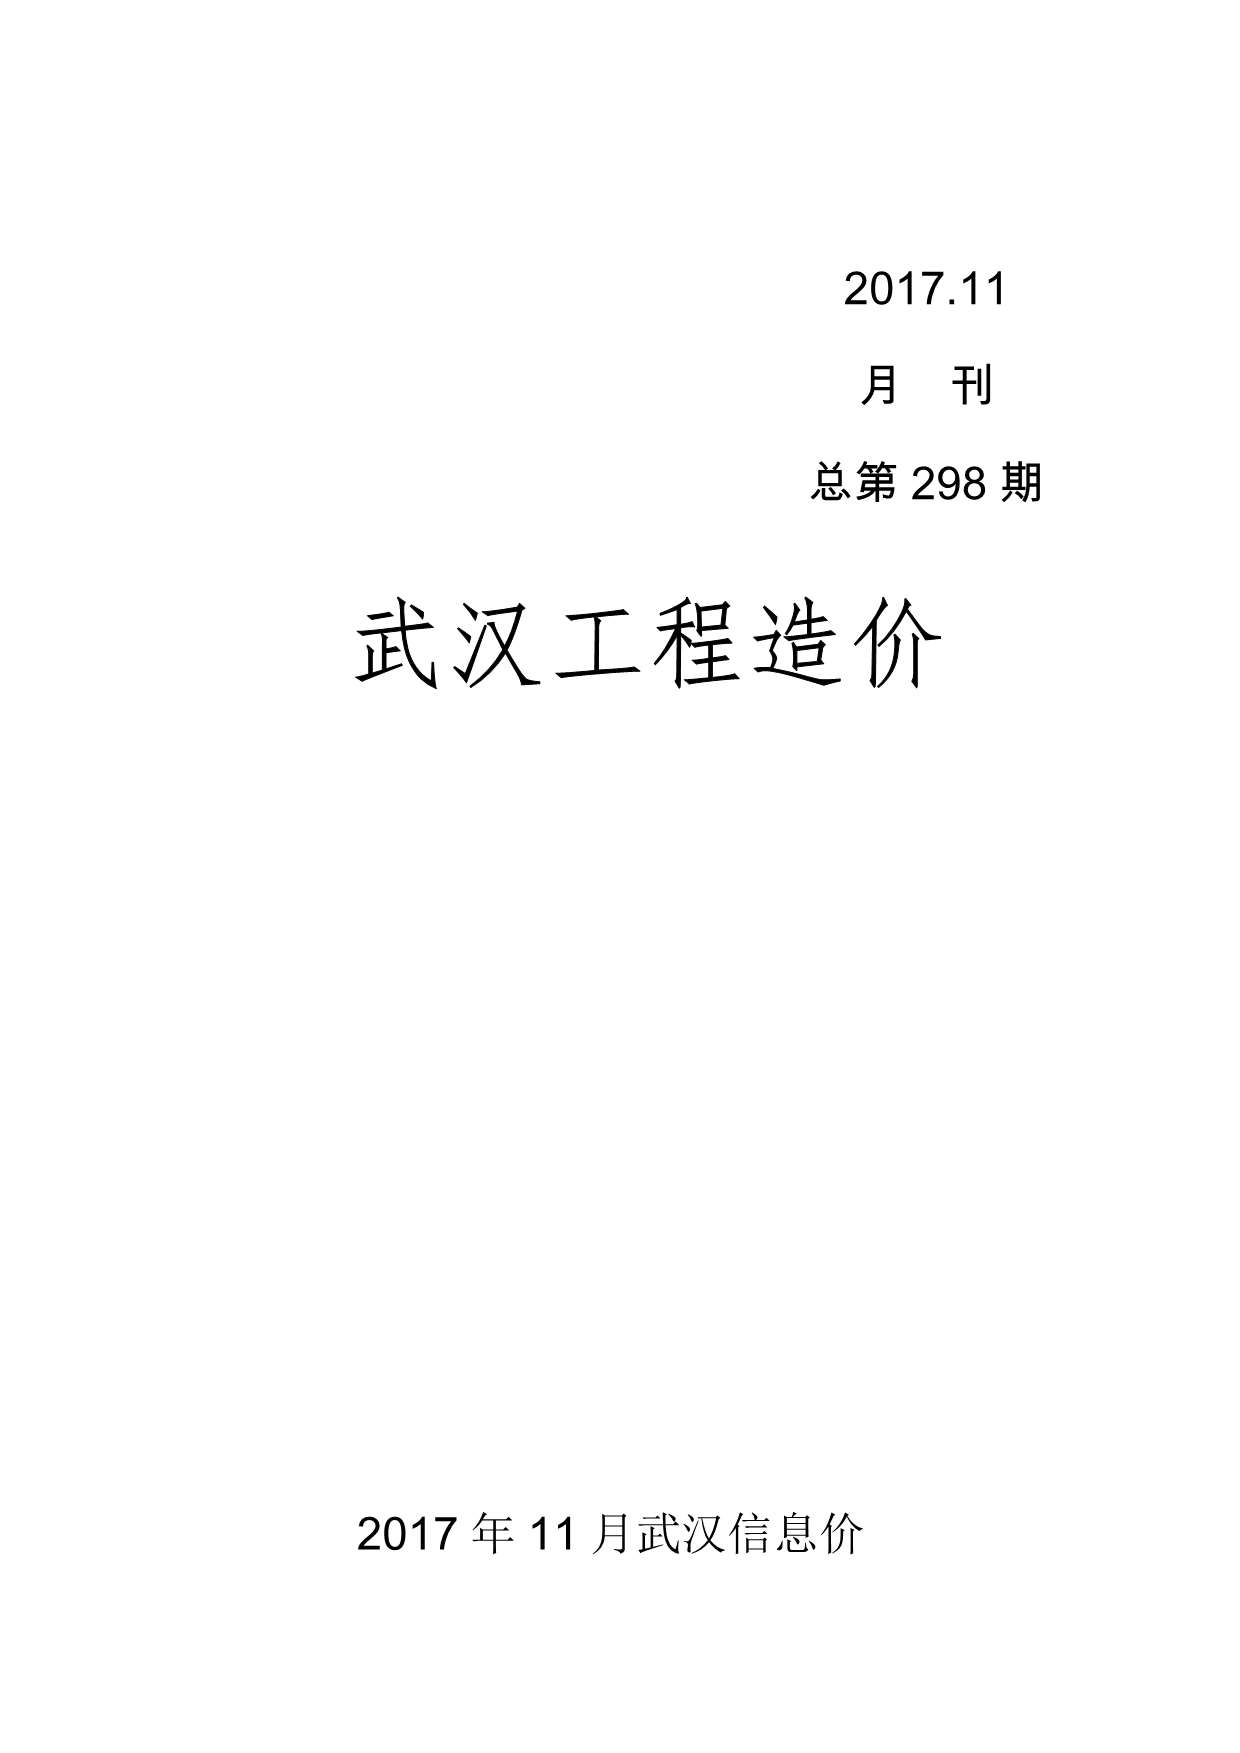 武汉市2017年11月建材价格依据